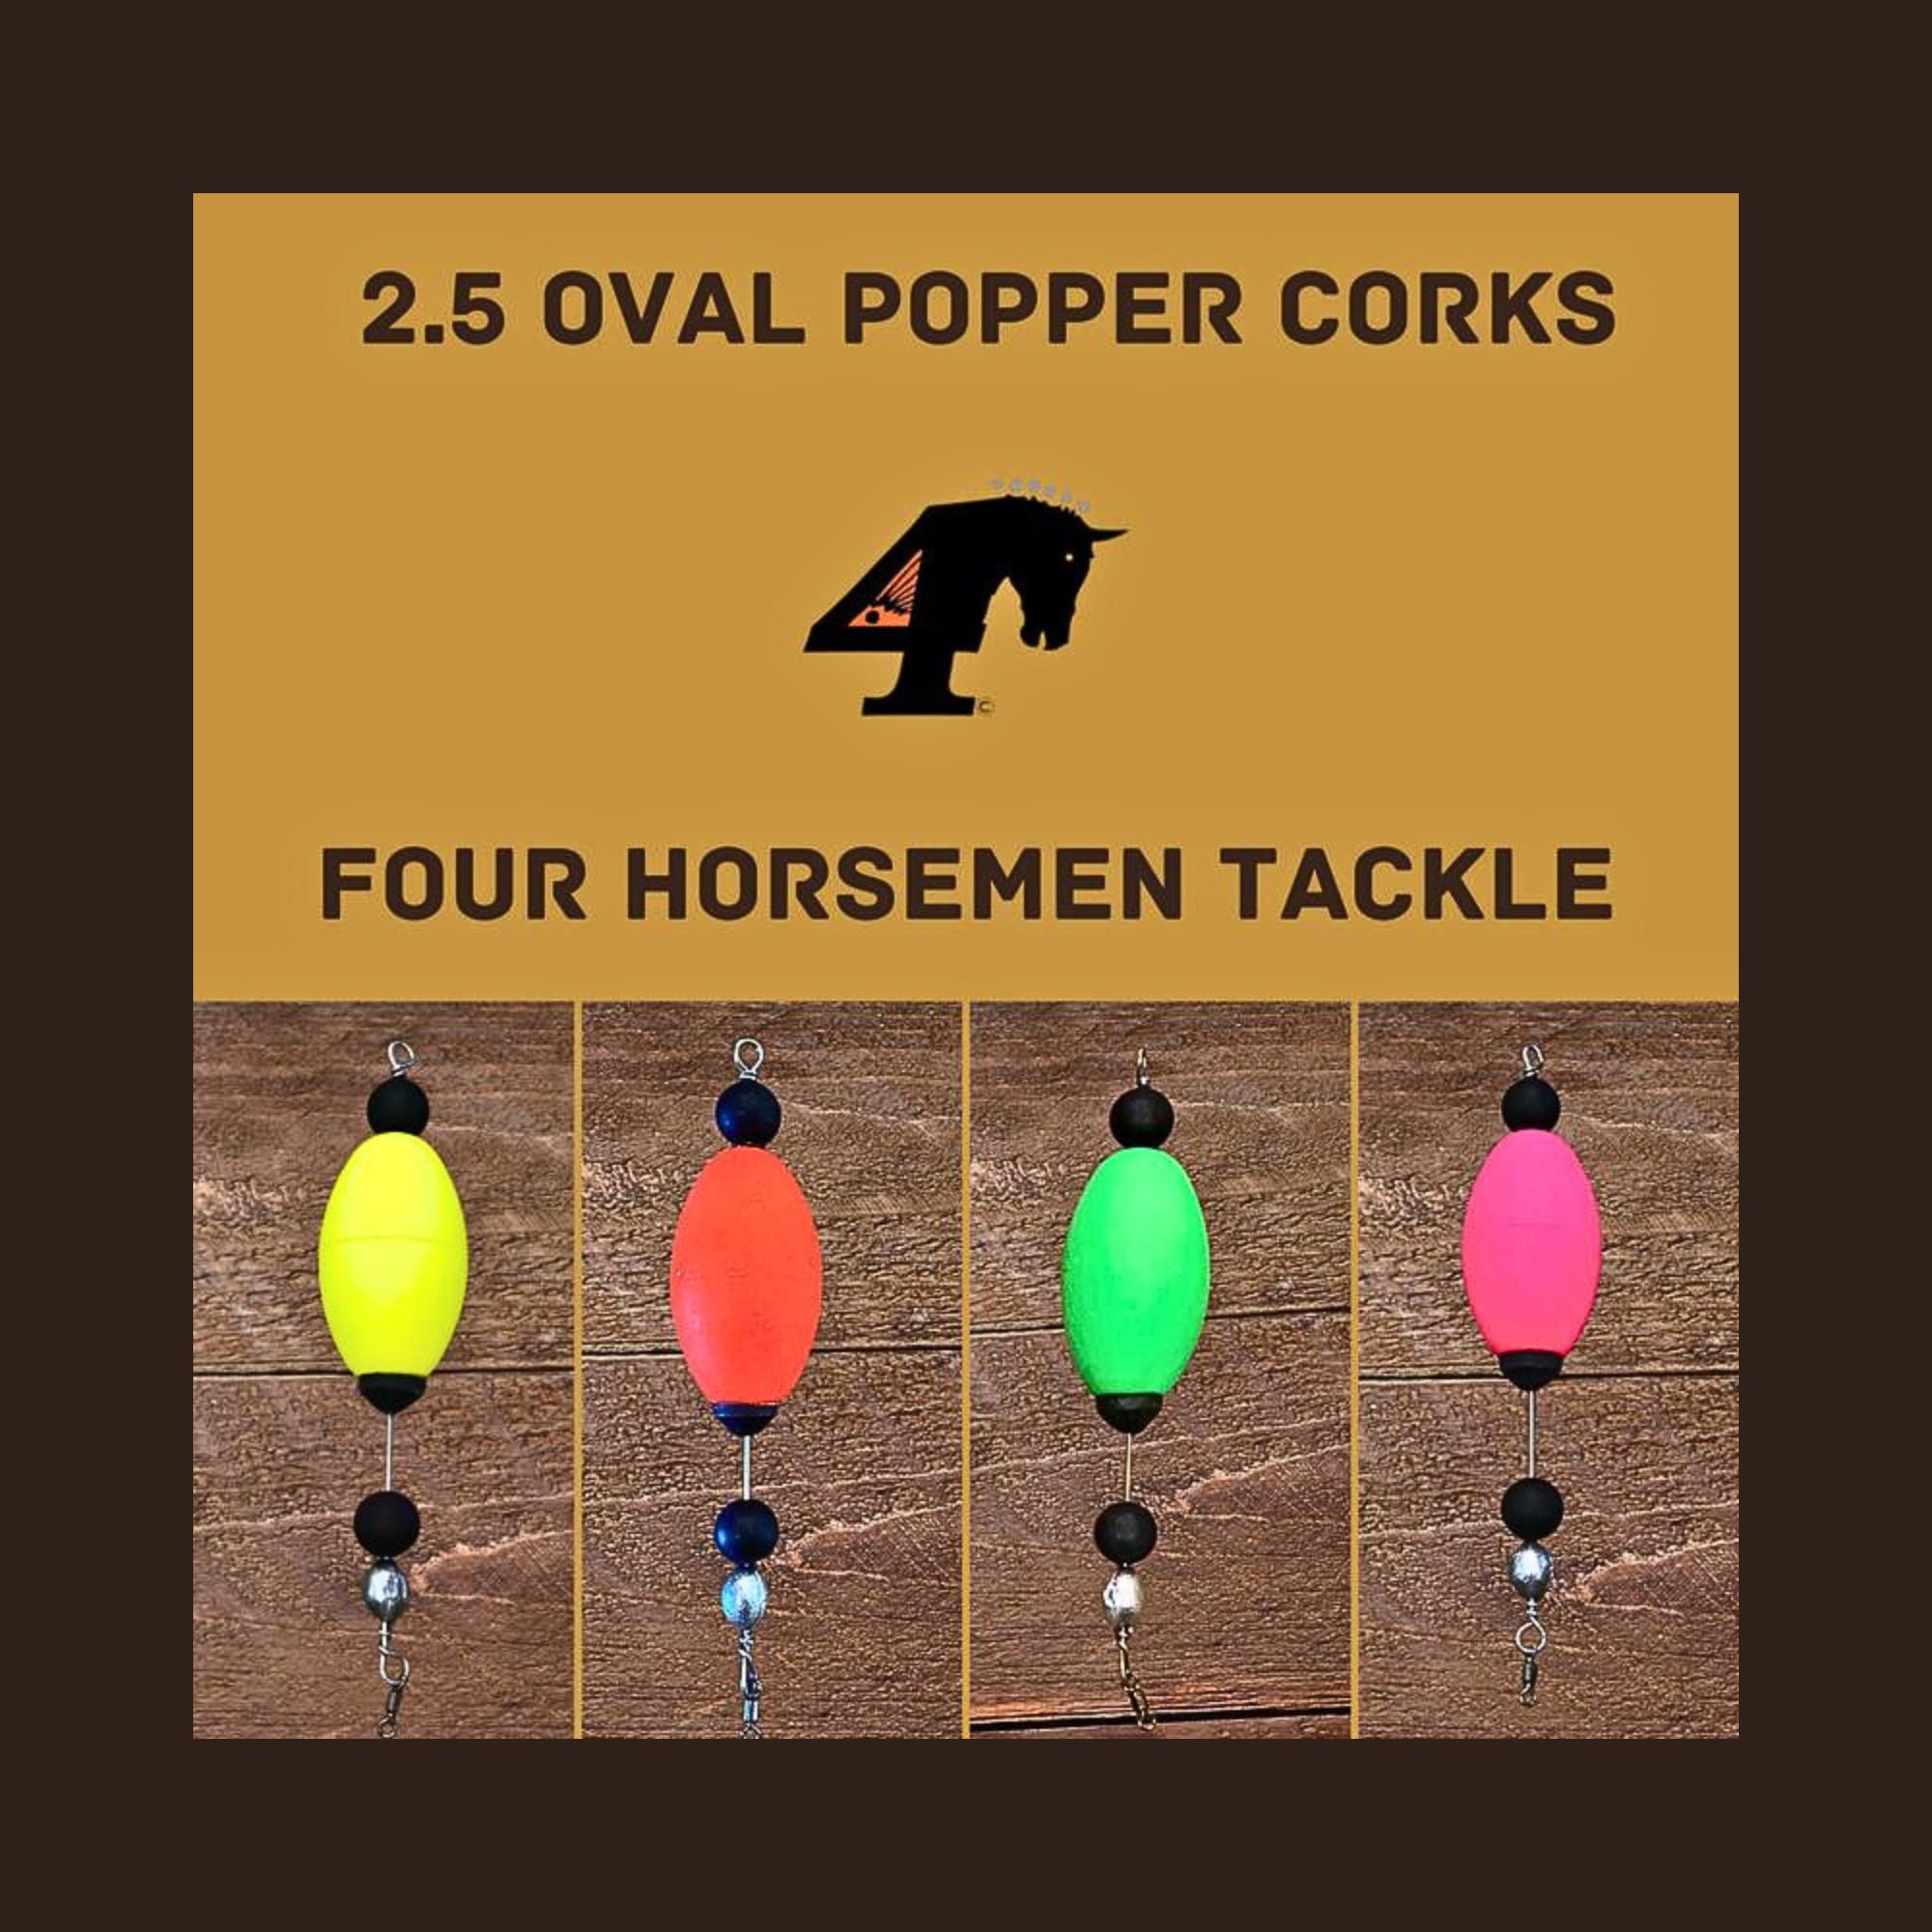 2.5 Oval Popper Cork, 4 Horsemen Tackle, Fishing Store